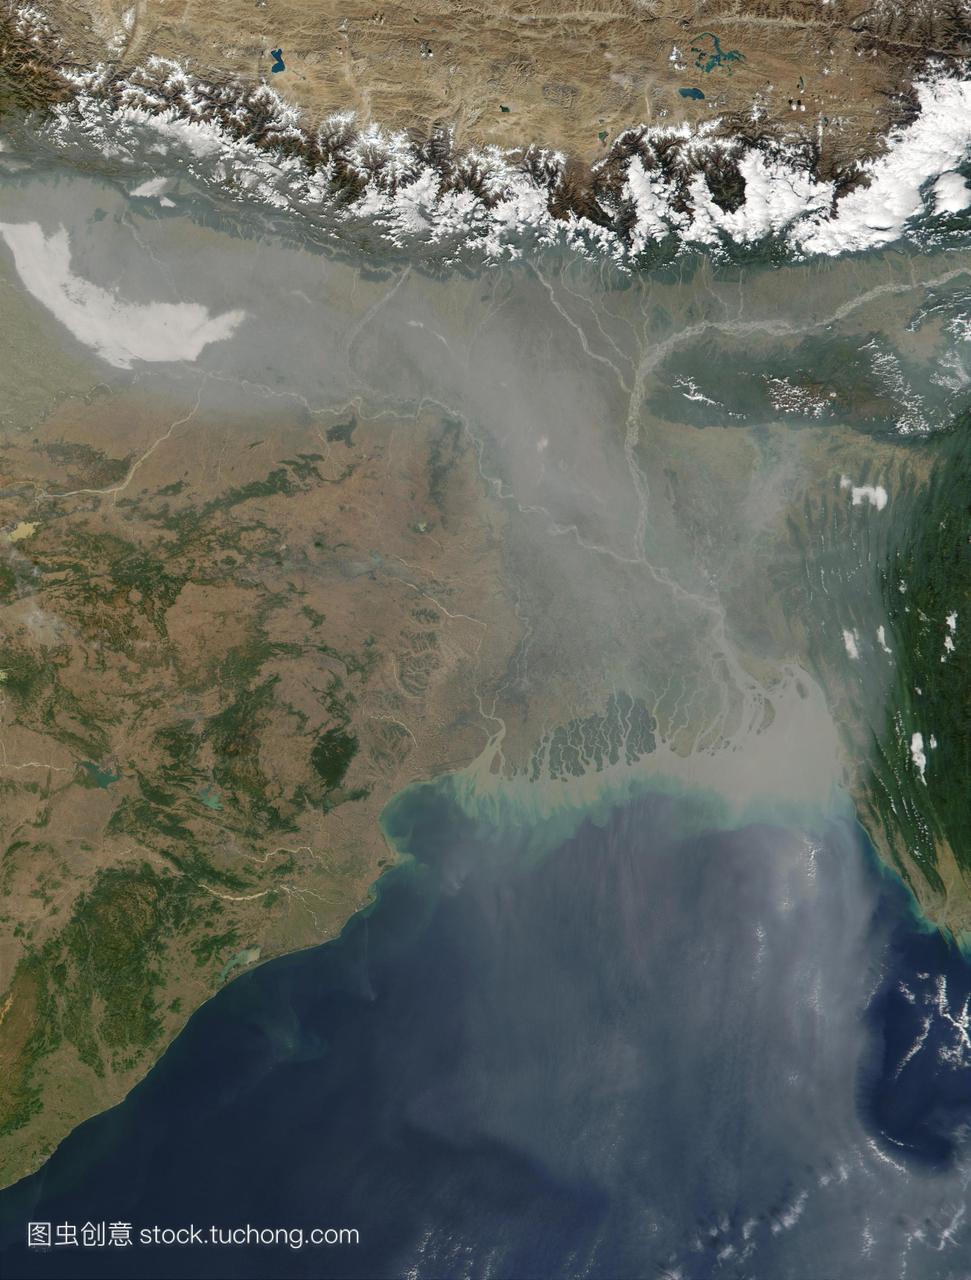 大气污染。卫星图像的气溶胶污染灰霾高于印度